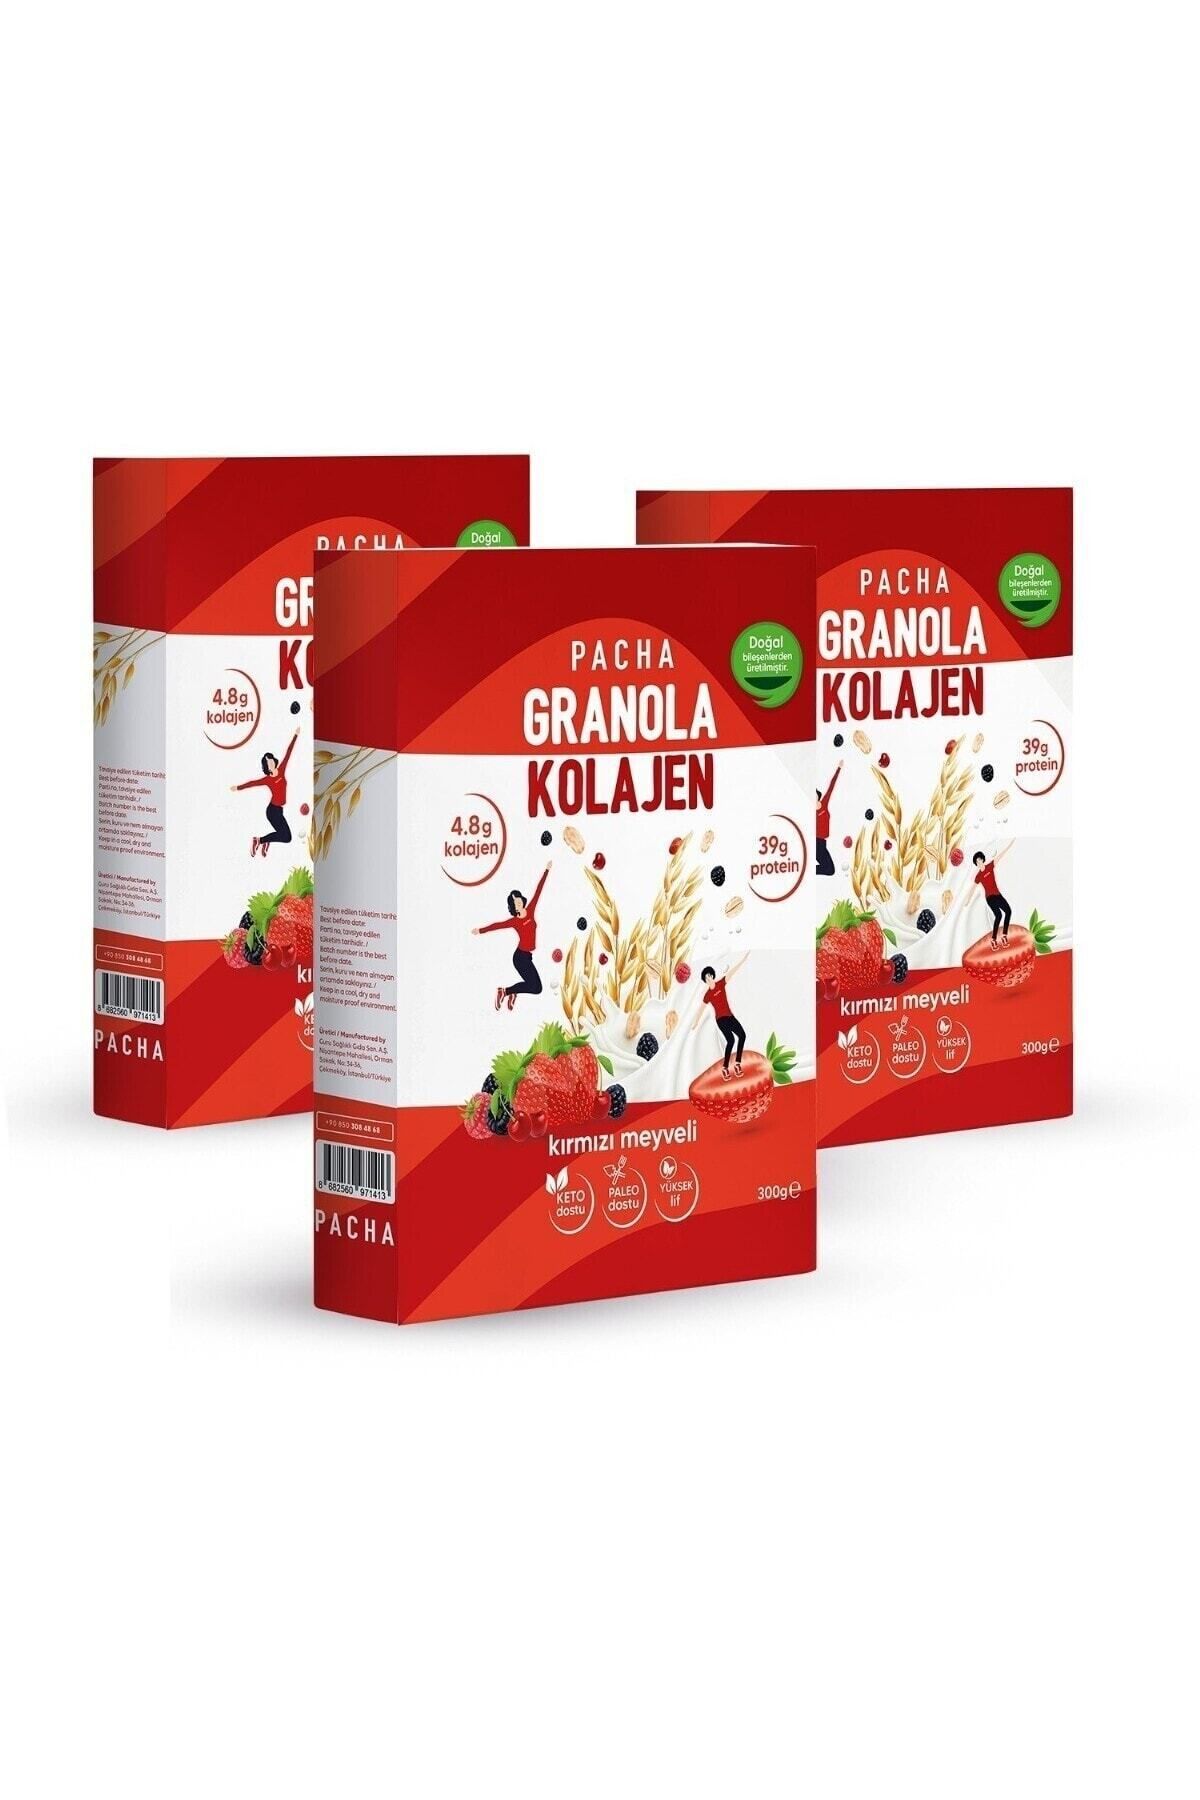 PACHA | Doğal Kolajen Ve Protein Granola | Kırmızı Meyveli | 3’lü Paket (3 X 300G)